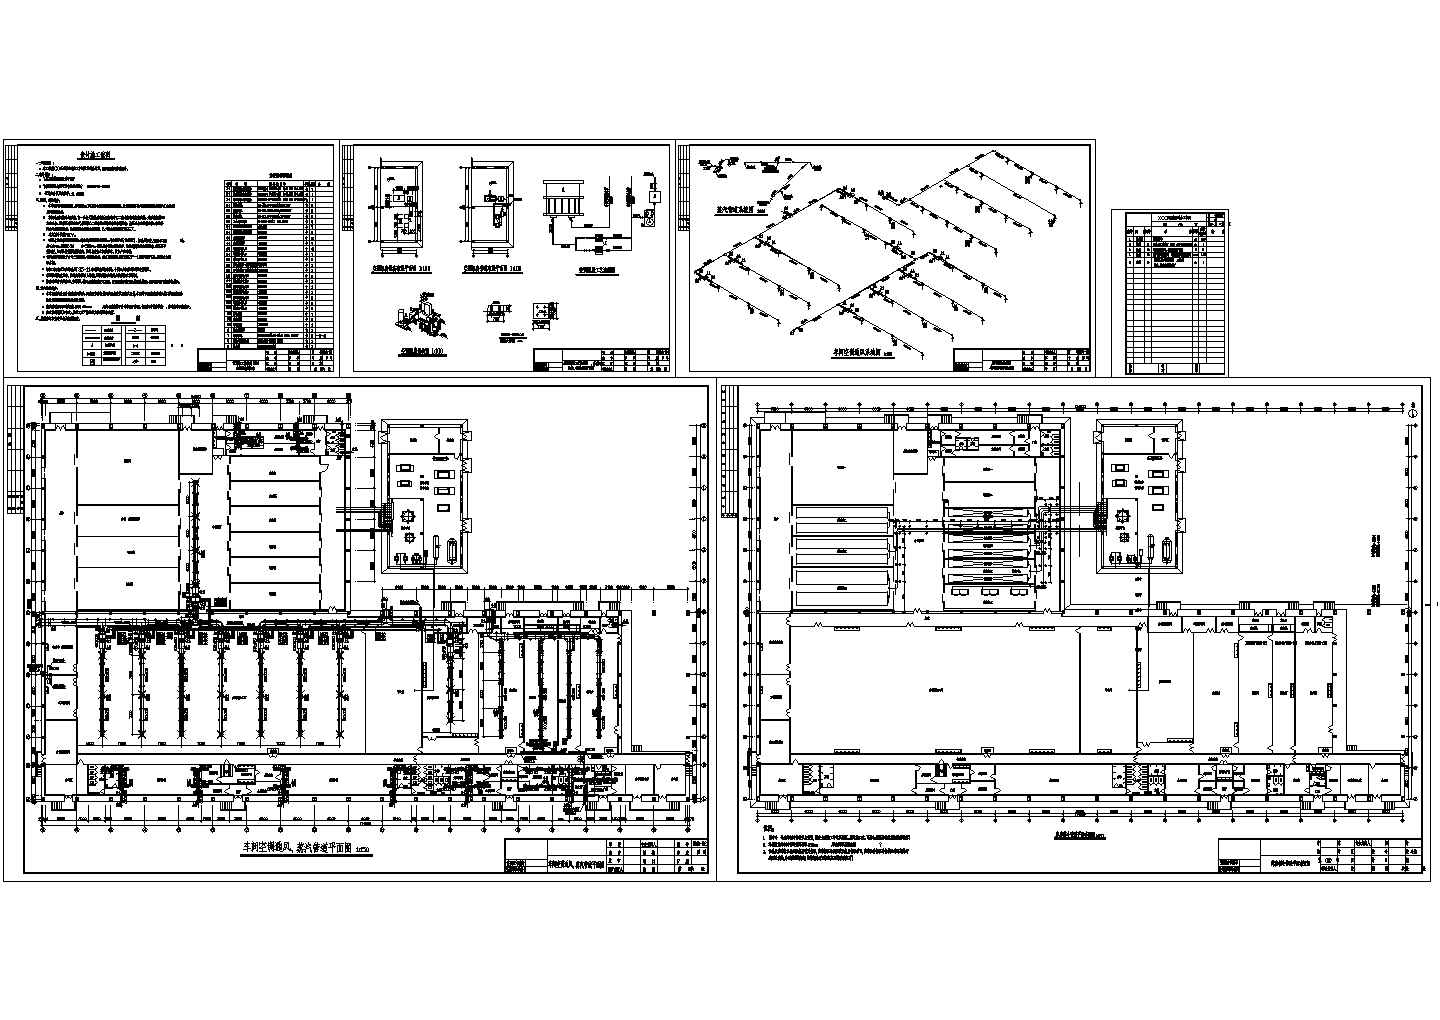 【江苏】某五星集团鸡加工车间设施部分通风空调及蒸汽管道设计图